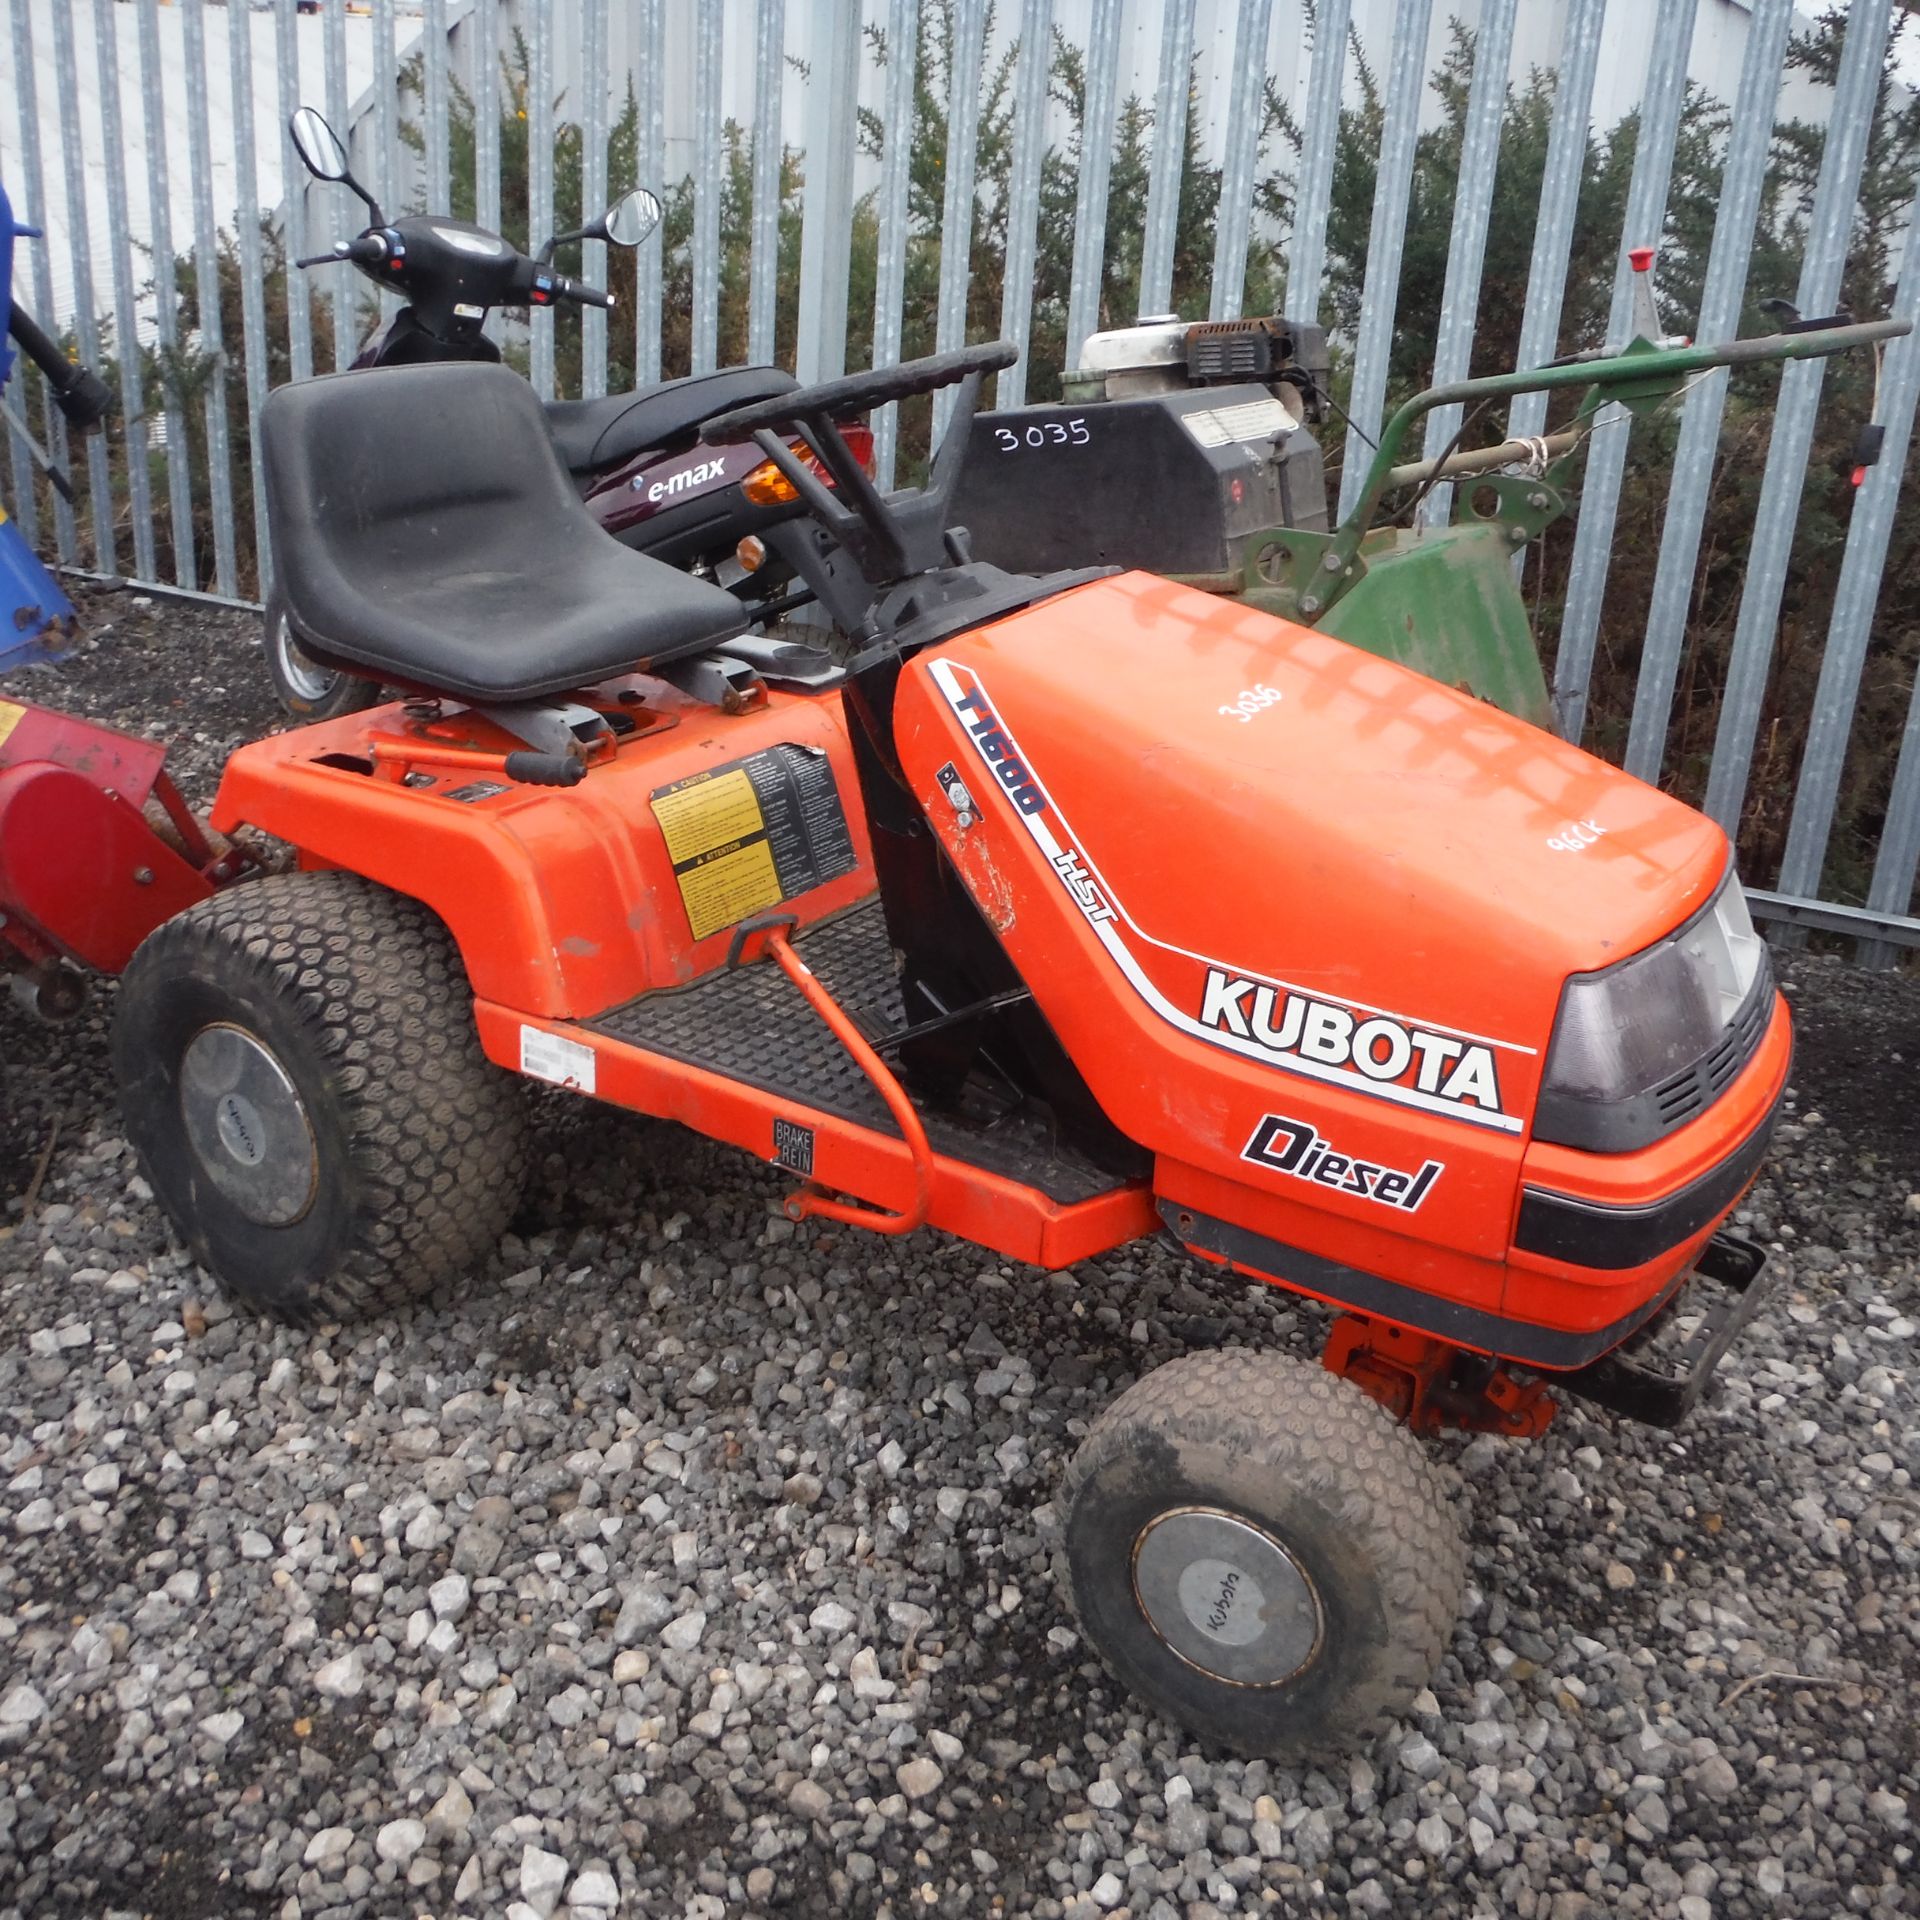 KUBOTA T1600 HST diesel lawn tractor (no mowing deck)